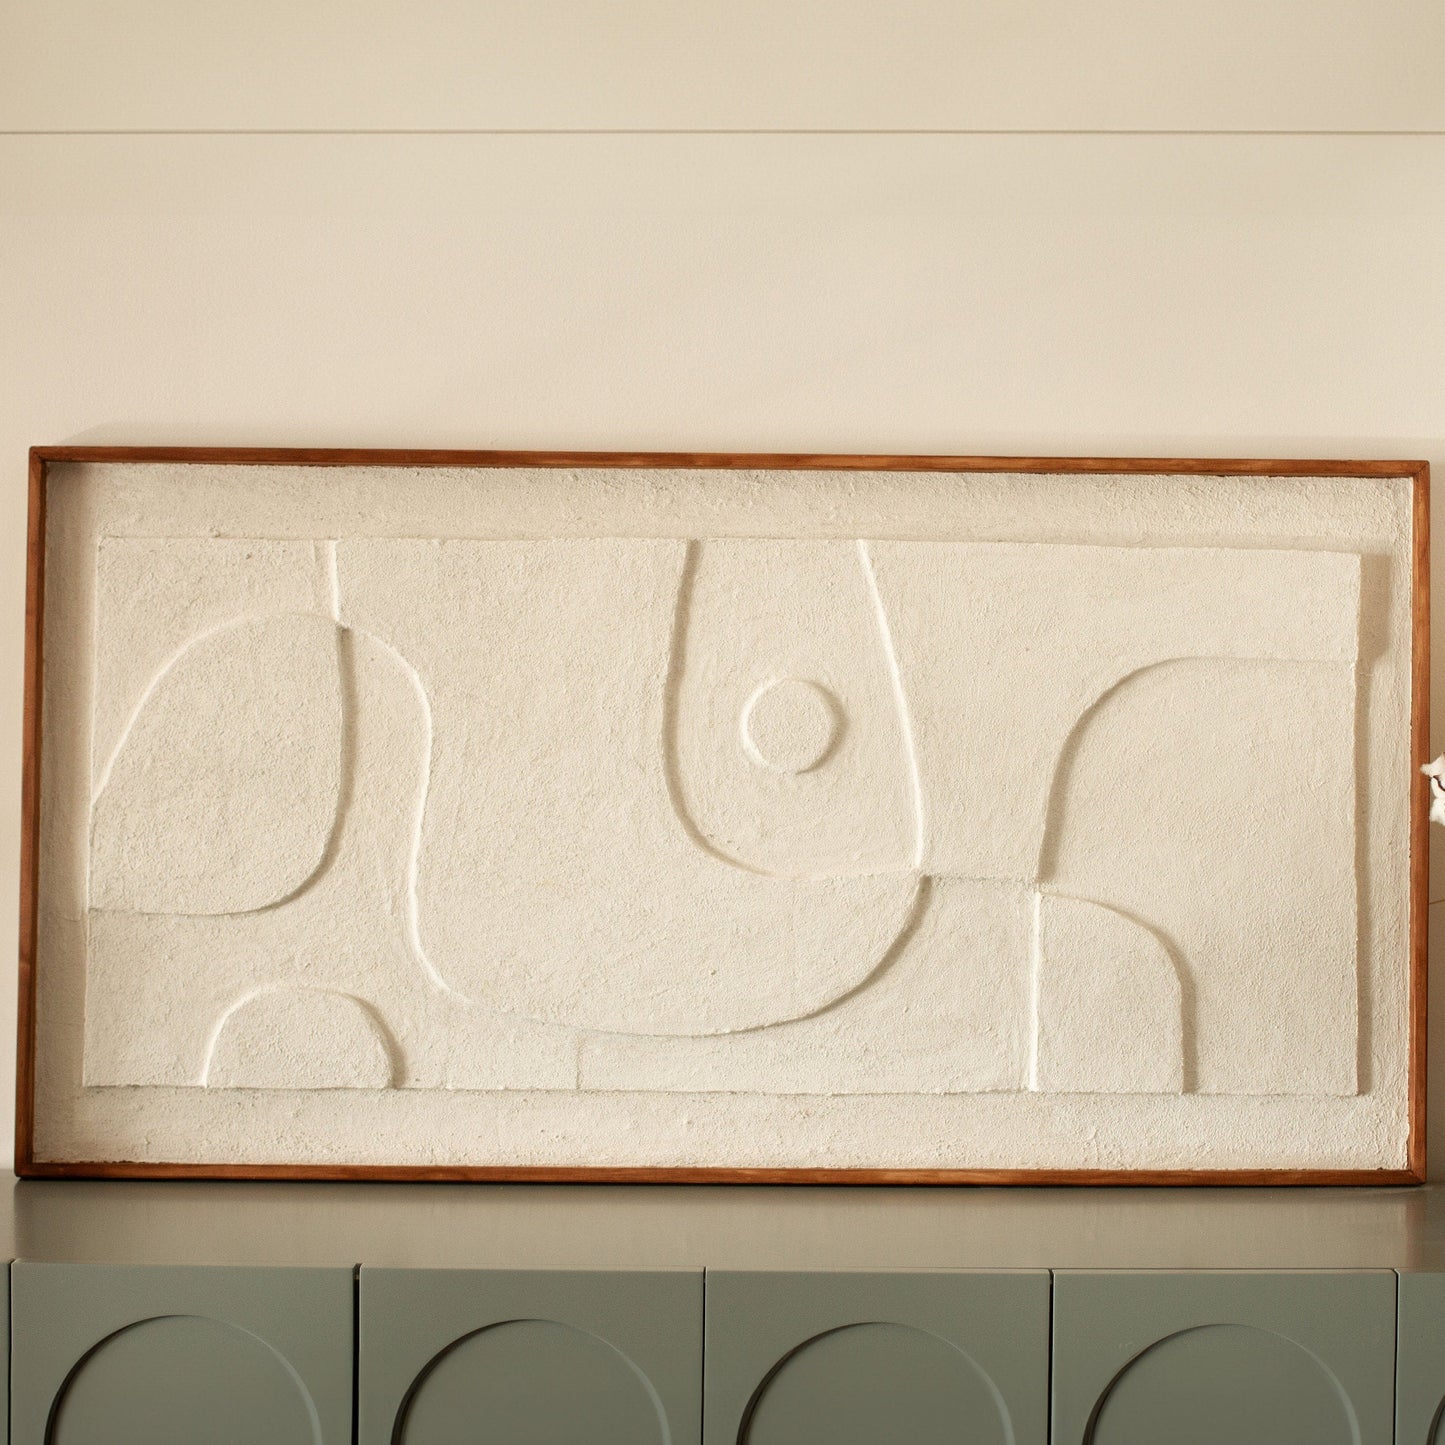 3D Relief Wall Art, Modern Plaster Art, Sculptural Wall Decor, Above Bed Decor - BlackIvyCraft